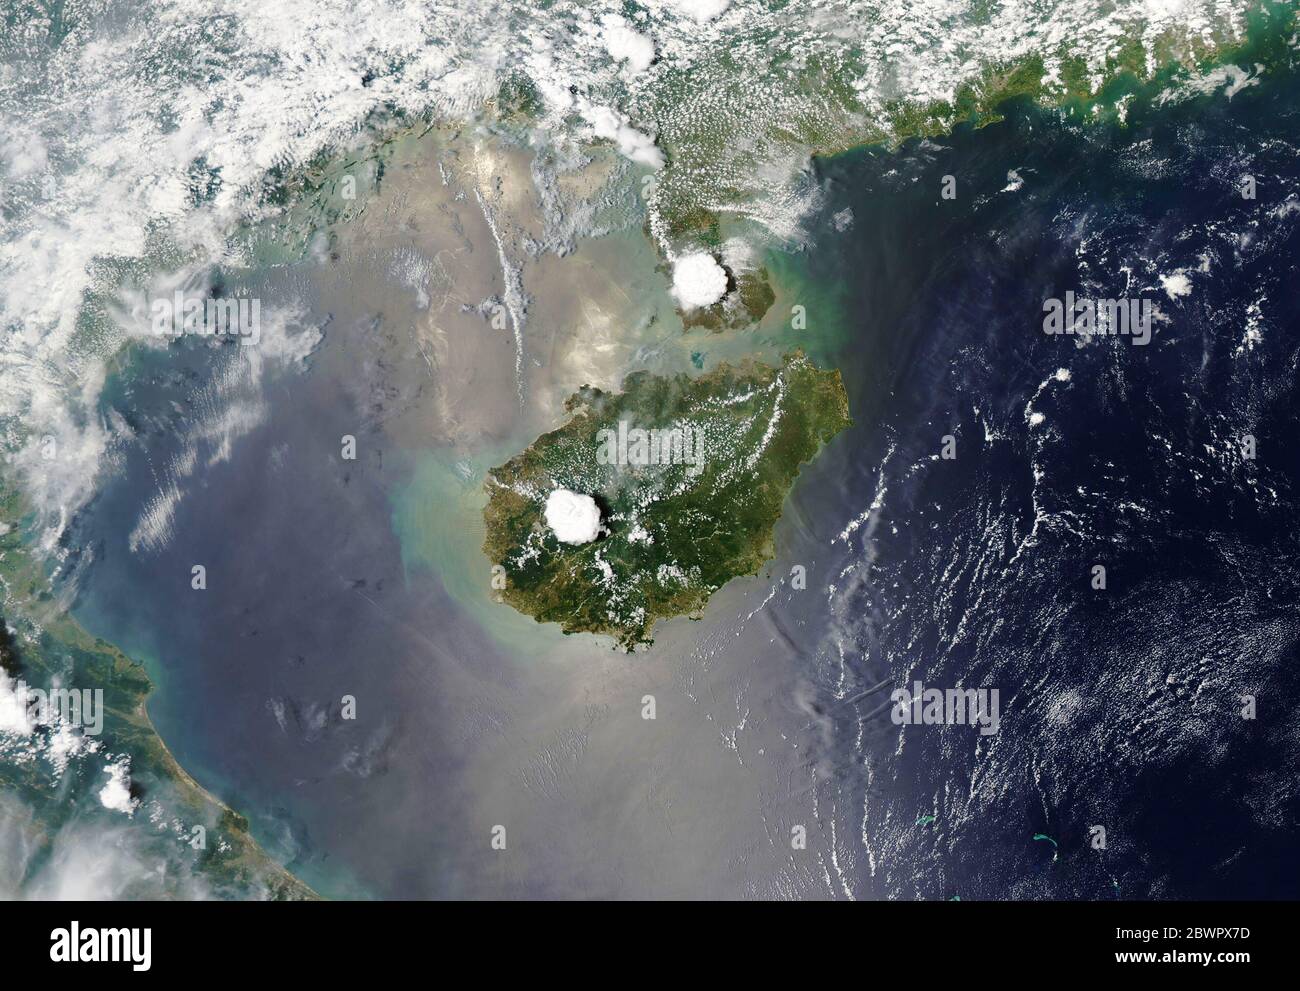 ISLA DE HAINAN, CHINA - 11 de mayo de 2020 - pase tiempo en la isla de Hainan en China, y es probable que sea testigo de una tormenta eléctrica. Hainan y nei Foto de stock